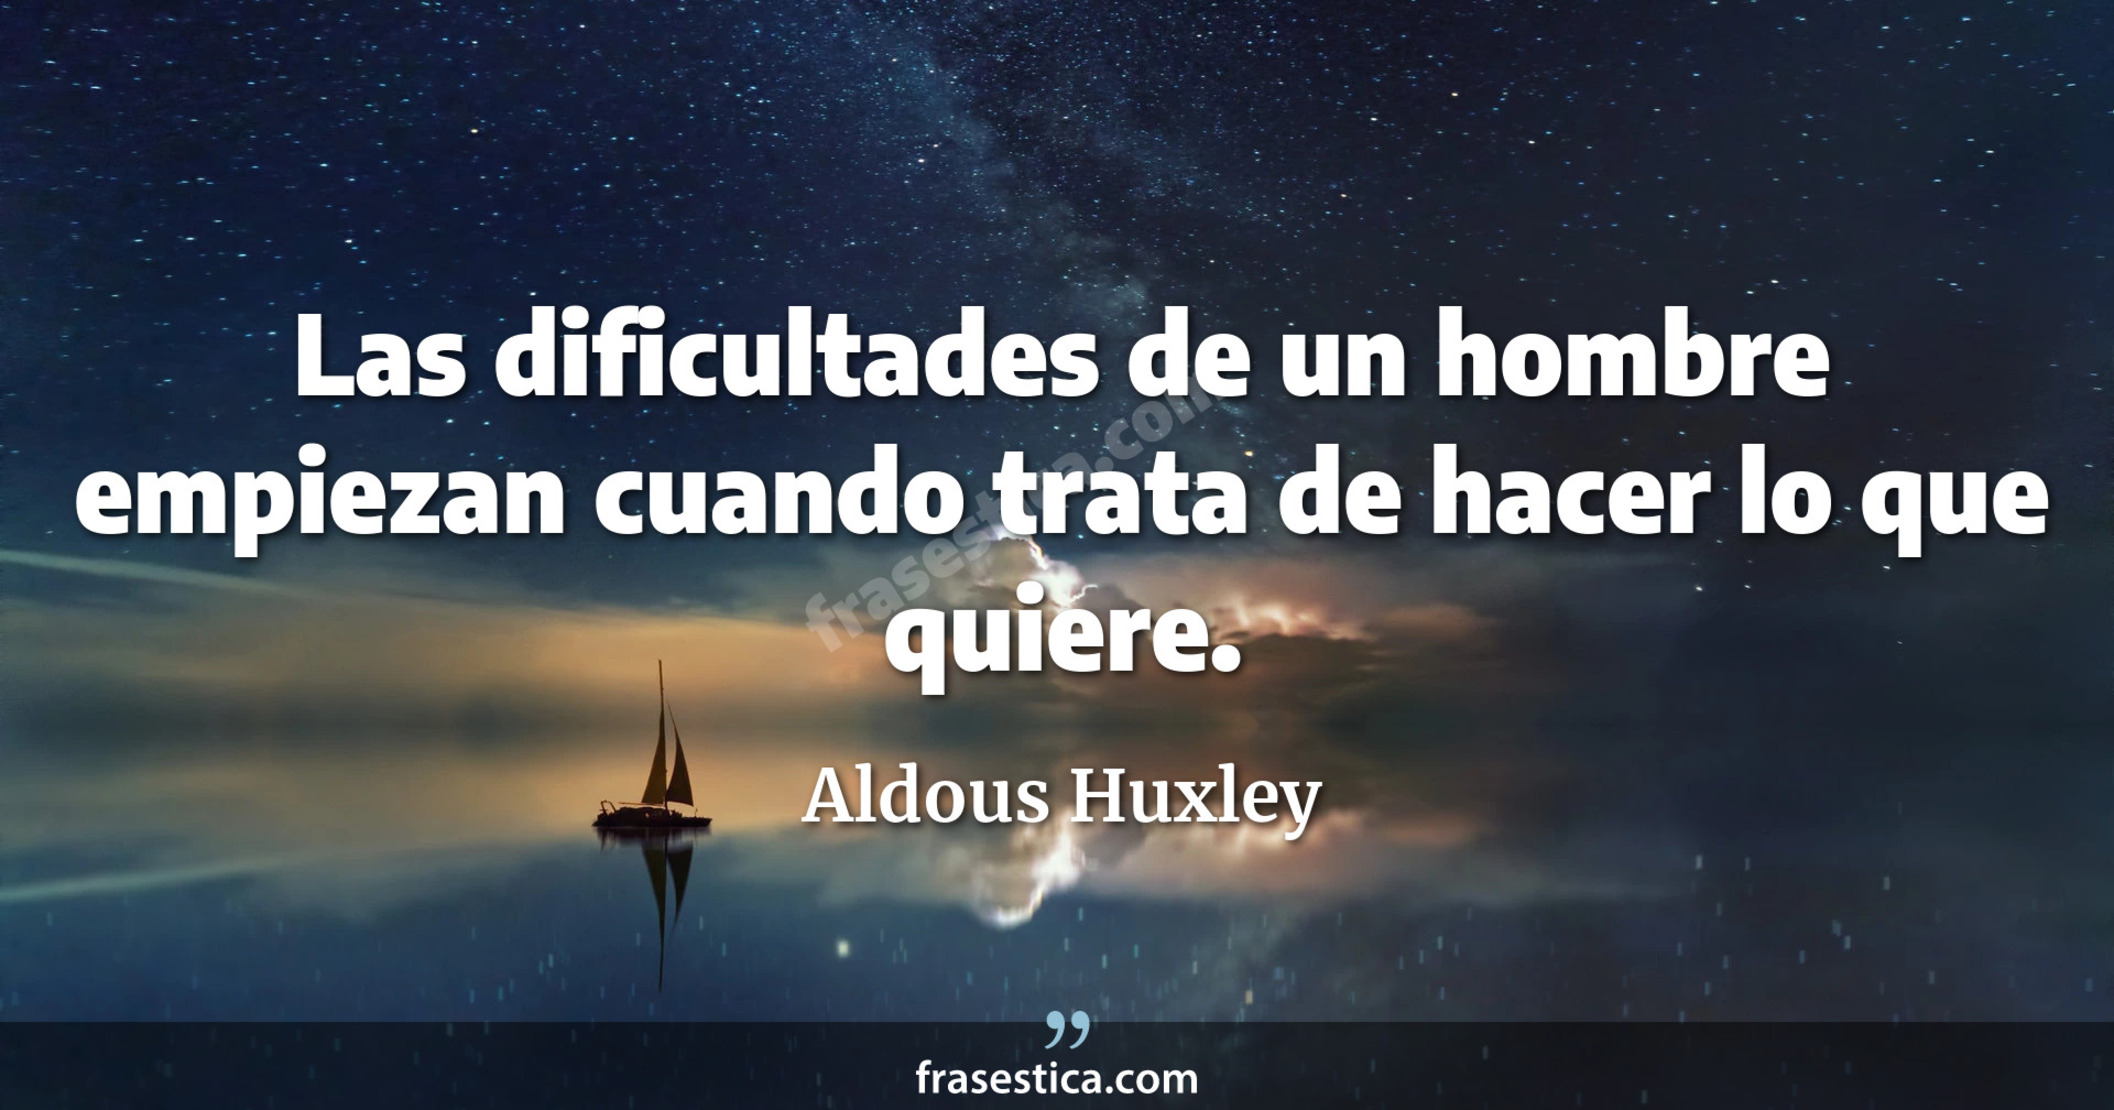 Las dificultades de un hombre empiezan cuando trata de hacer lo que quiere. - Aldous Huxley